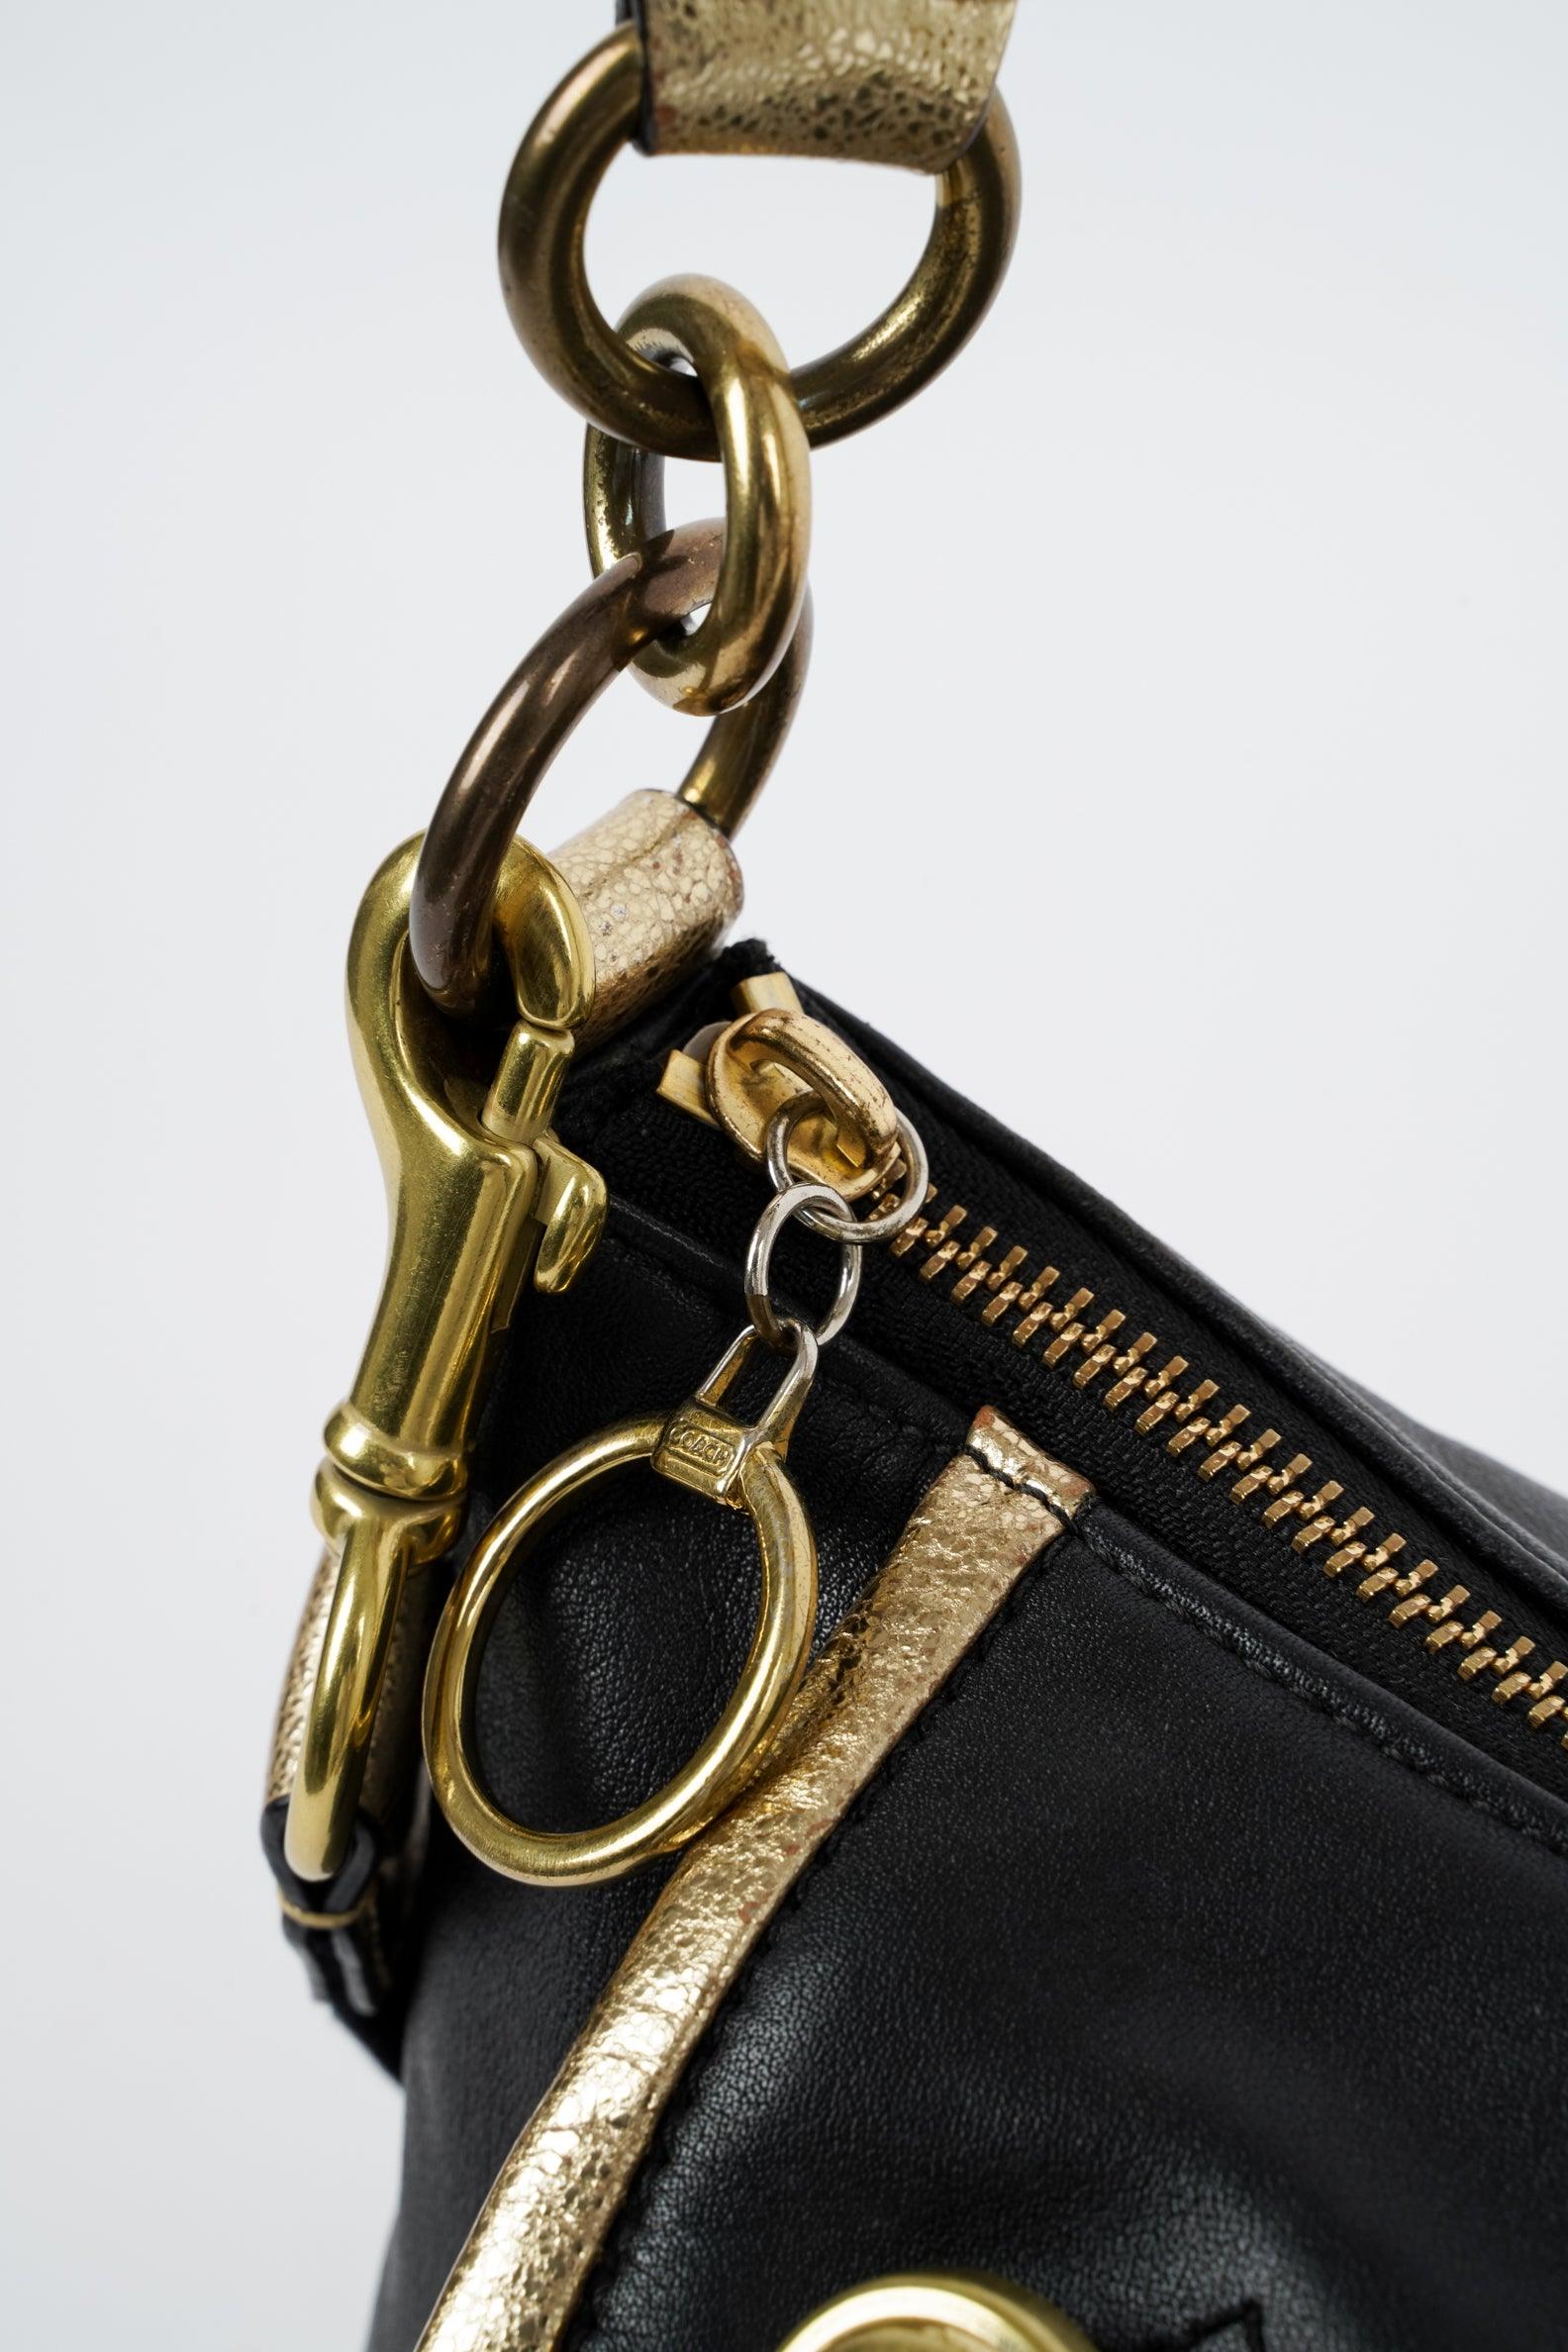 Black-Gold Leather Bag - Volver